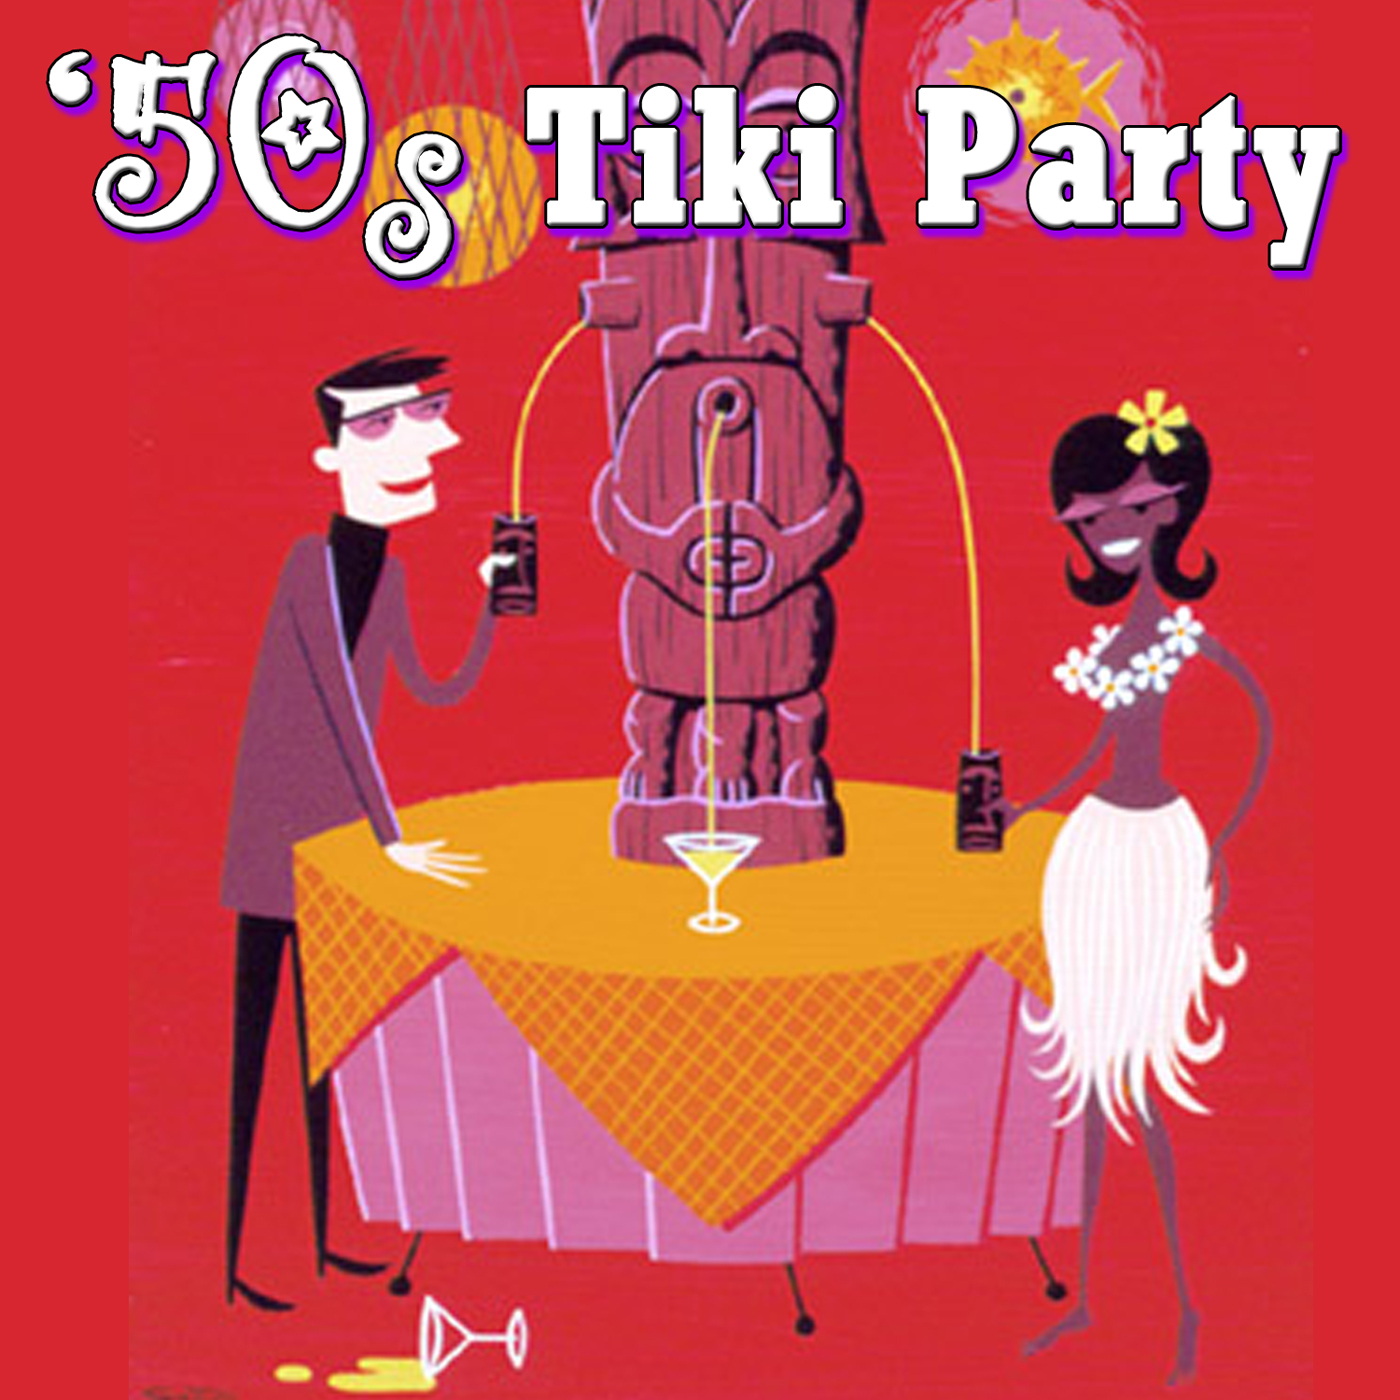 50s Tiki Party